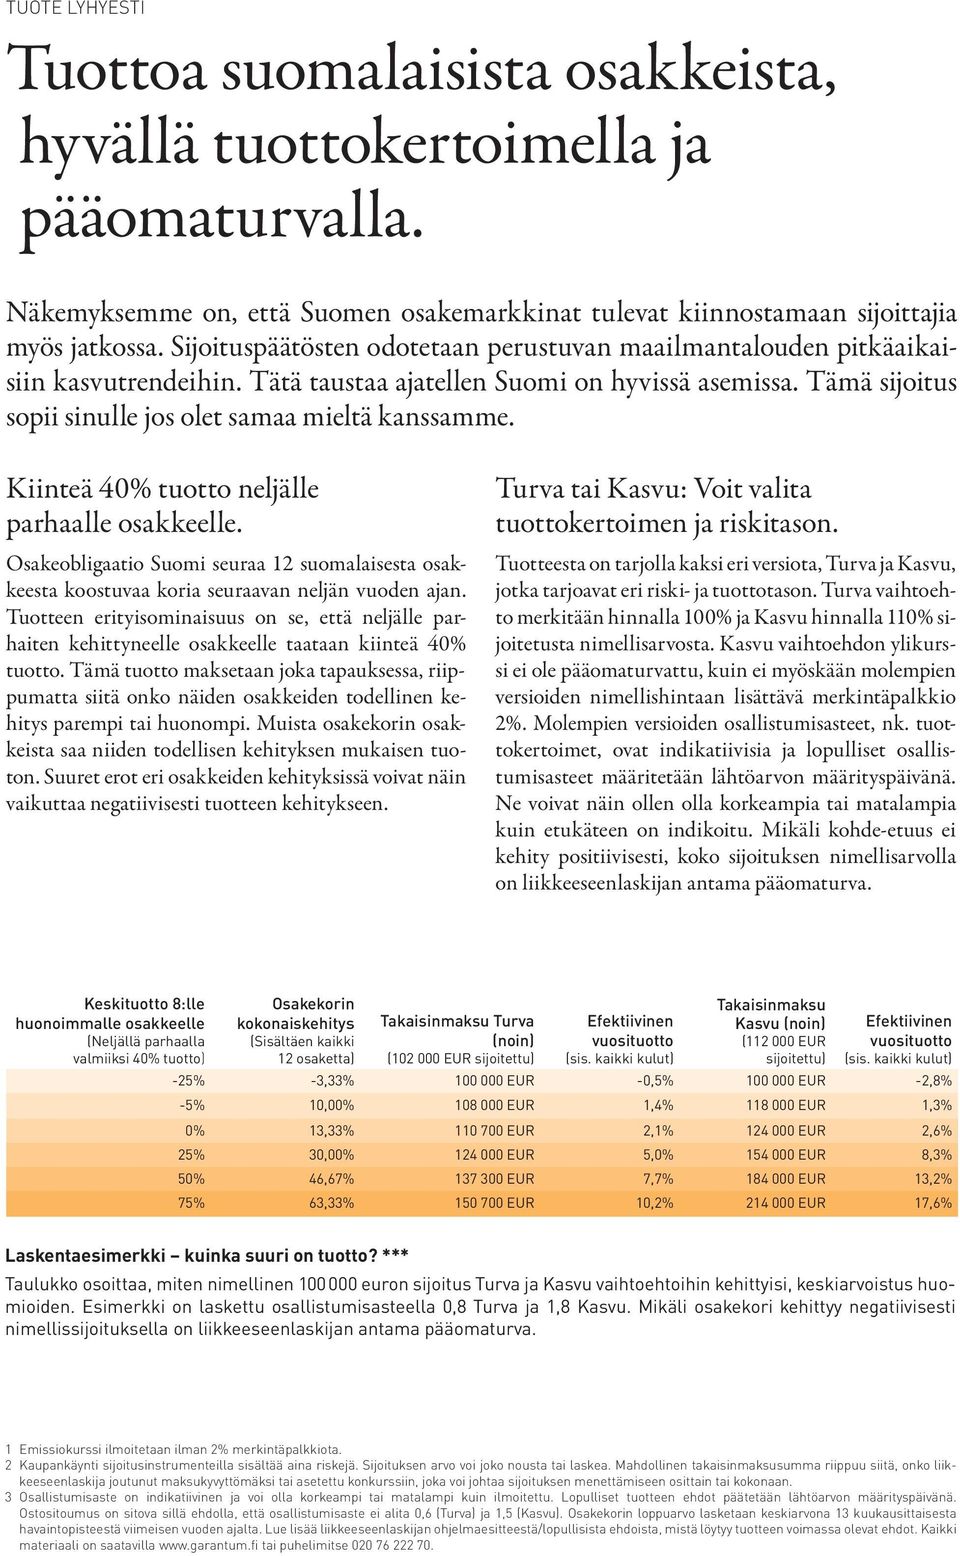 Kiinteä 40% tuotto neljälle parhaalle osakkeelle. Osakeobligaatio Suomi seuraa 12 suomalaisesta osakkeesta koostuvaa koria seuraavan neljän vuoden ajan.